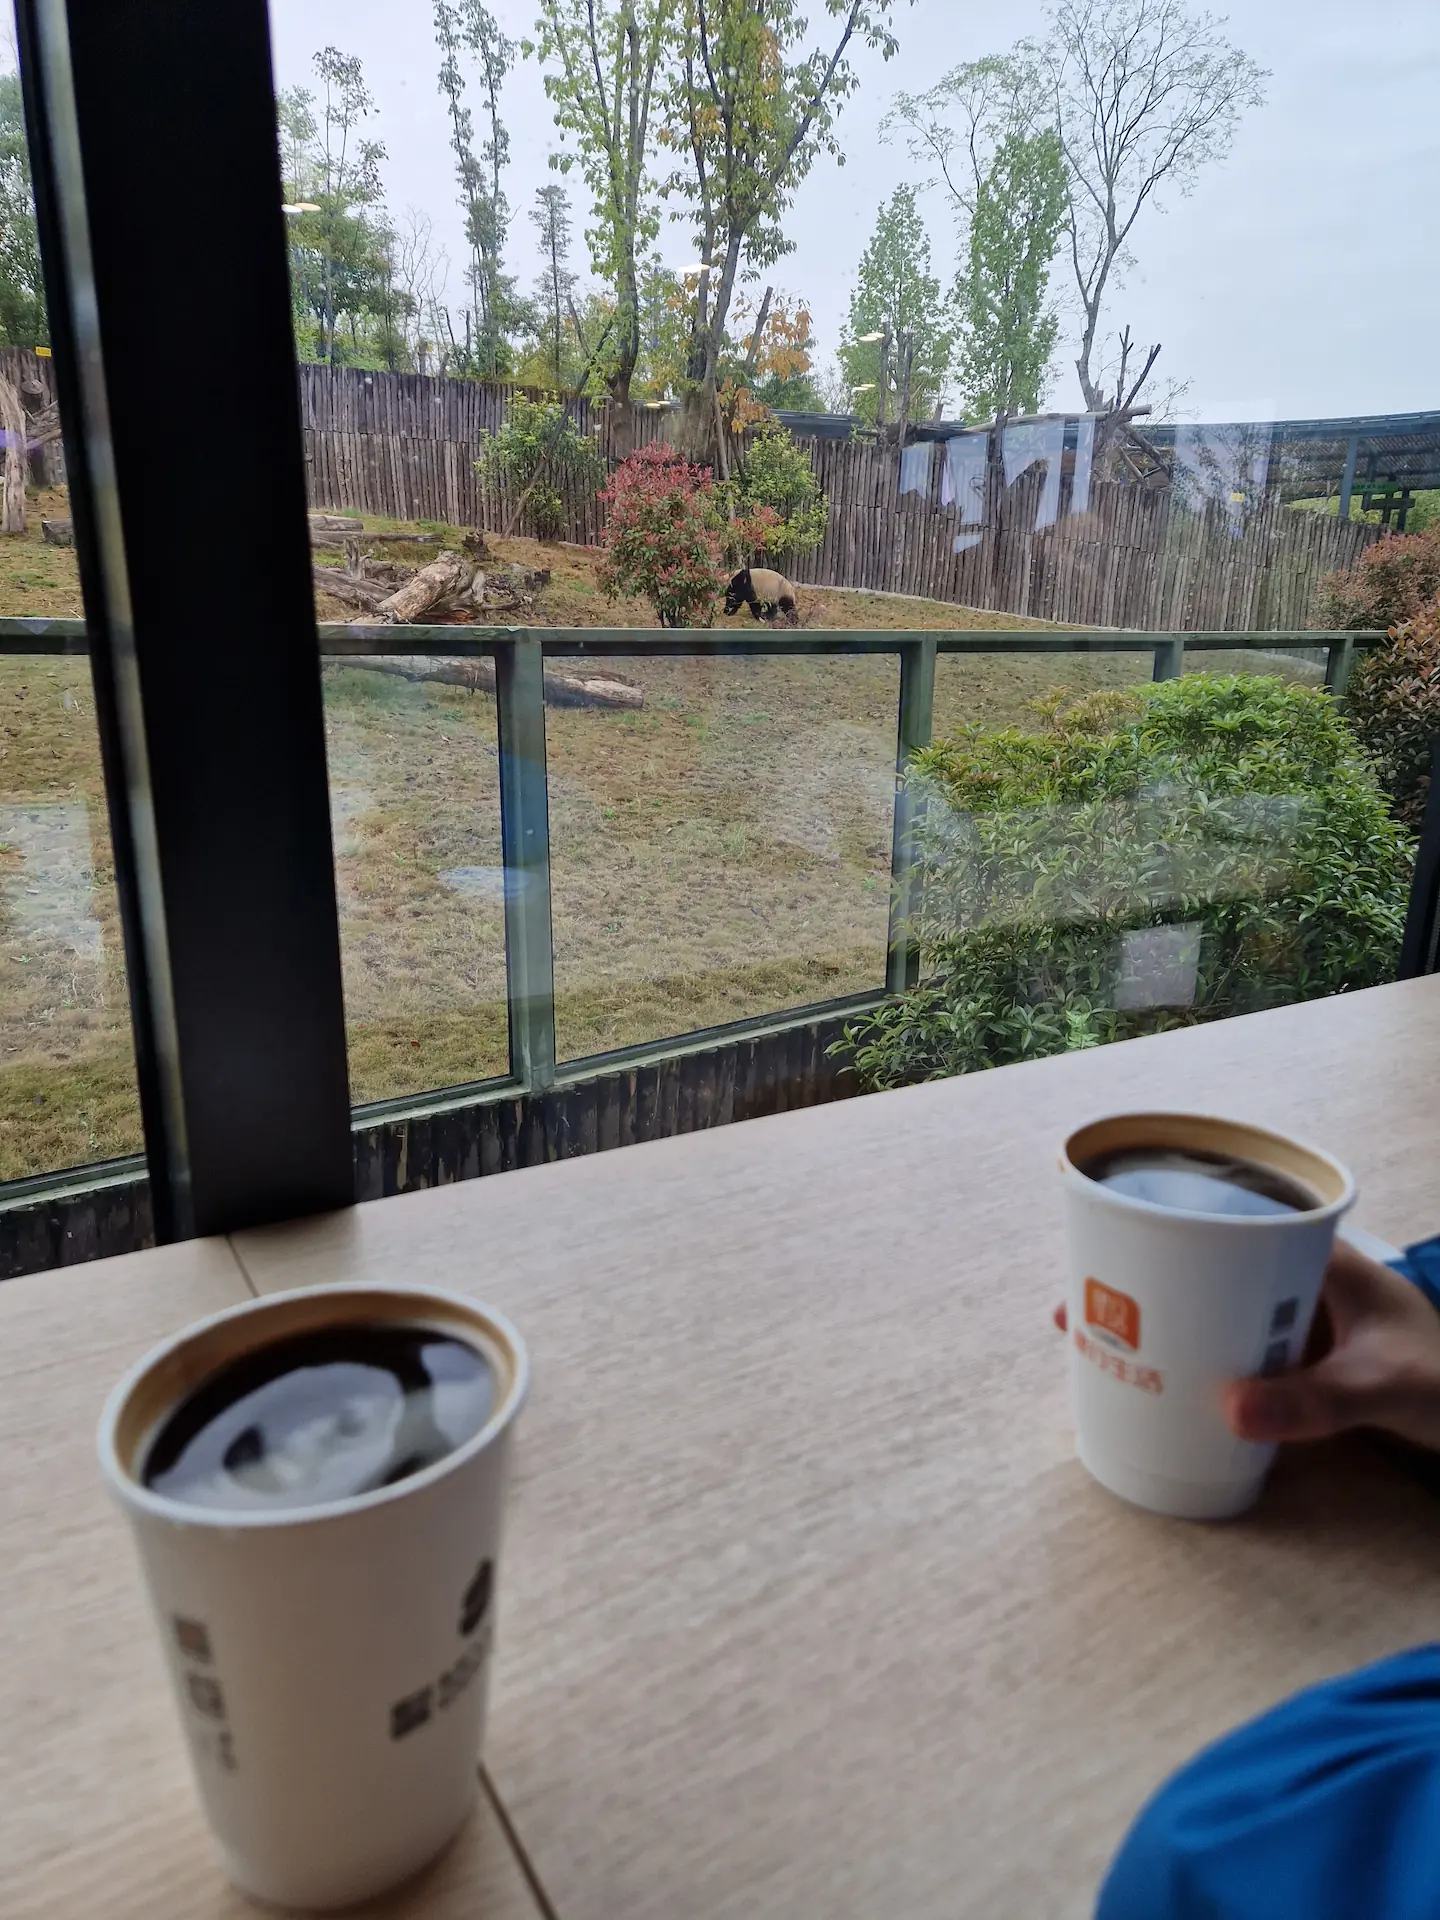 Deux cafés noirs sont posés sur la table, face à la fenêtre. Un peu plus loin, on peut voir un panda qui s'éloigne.